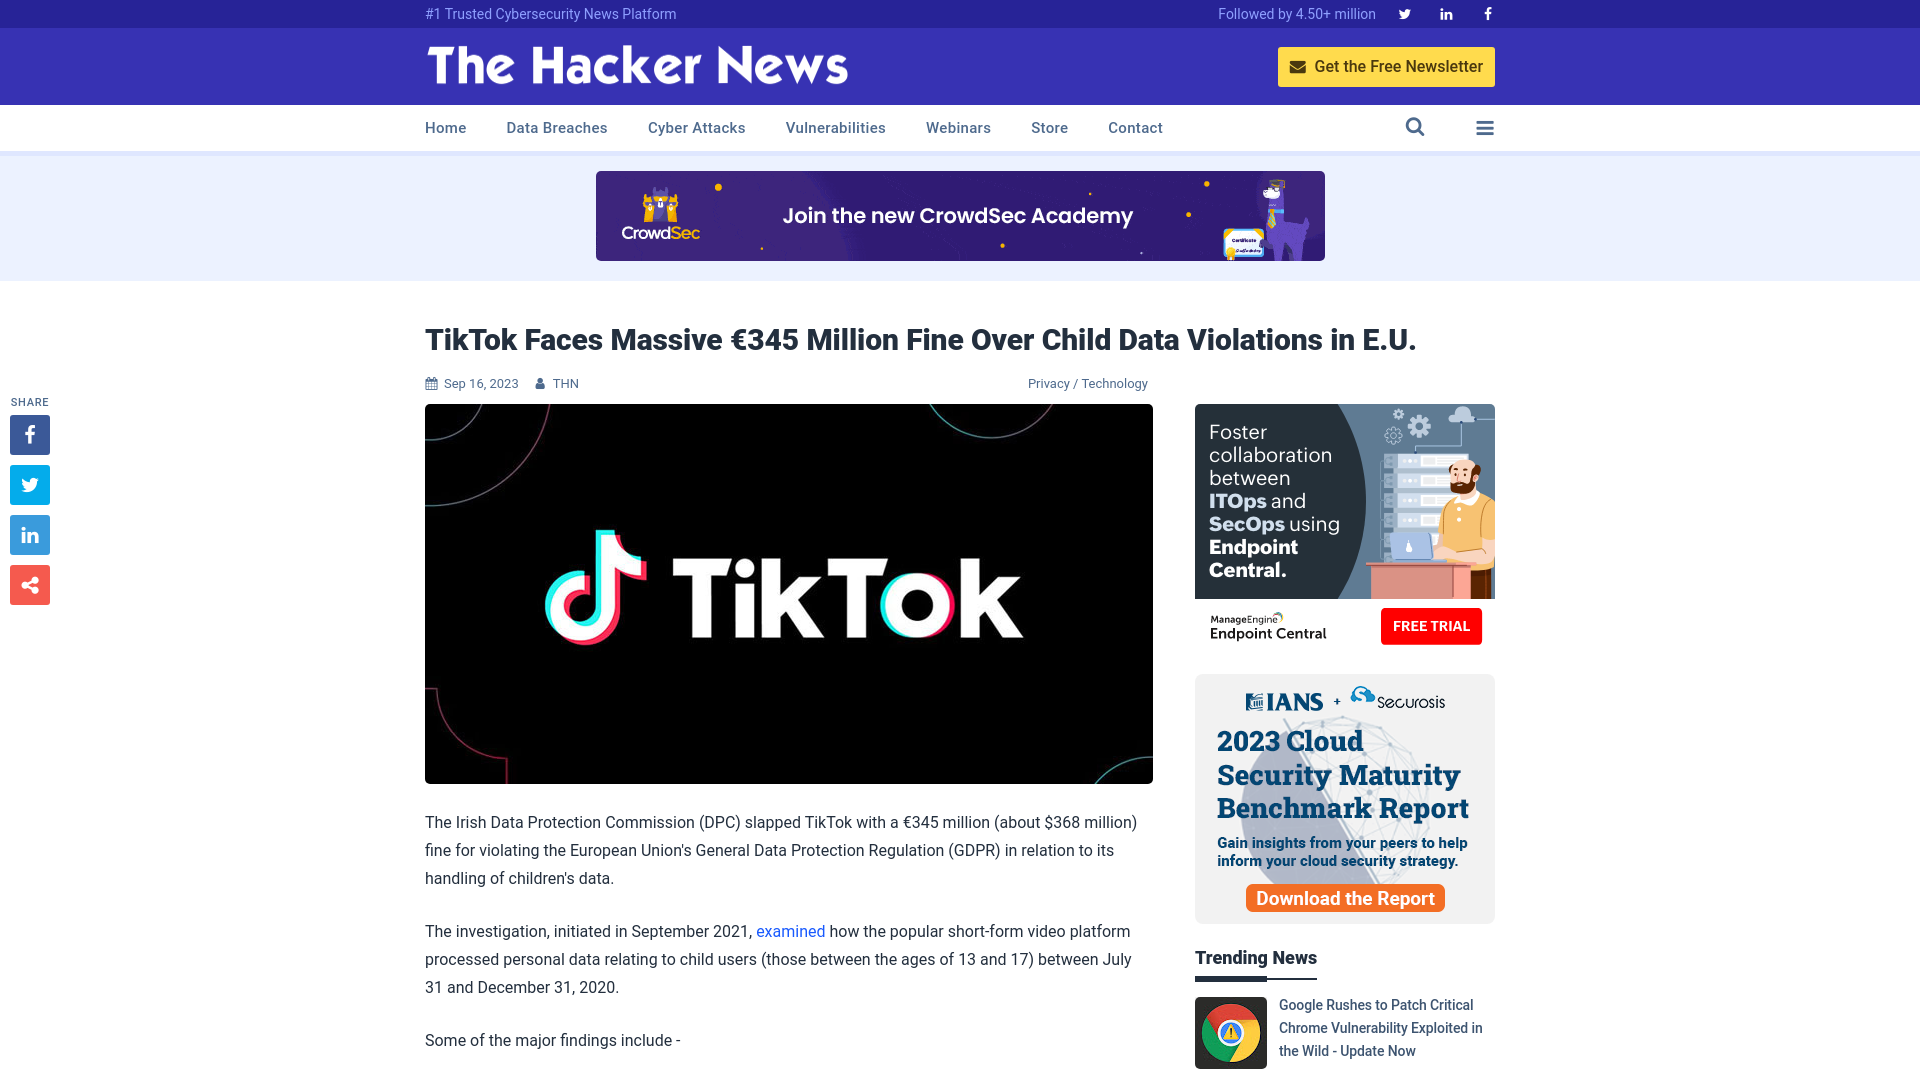 TikTok Faces Massive €345 Million Fine Over Child Data Violations in E.U.